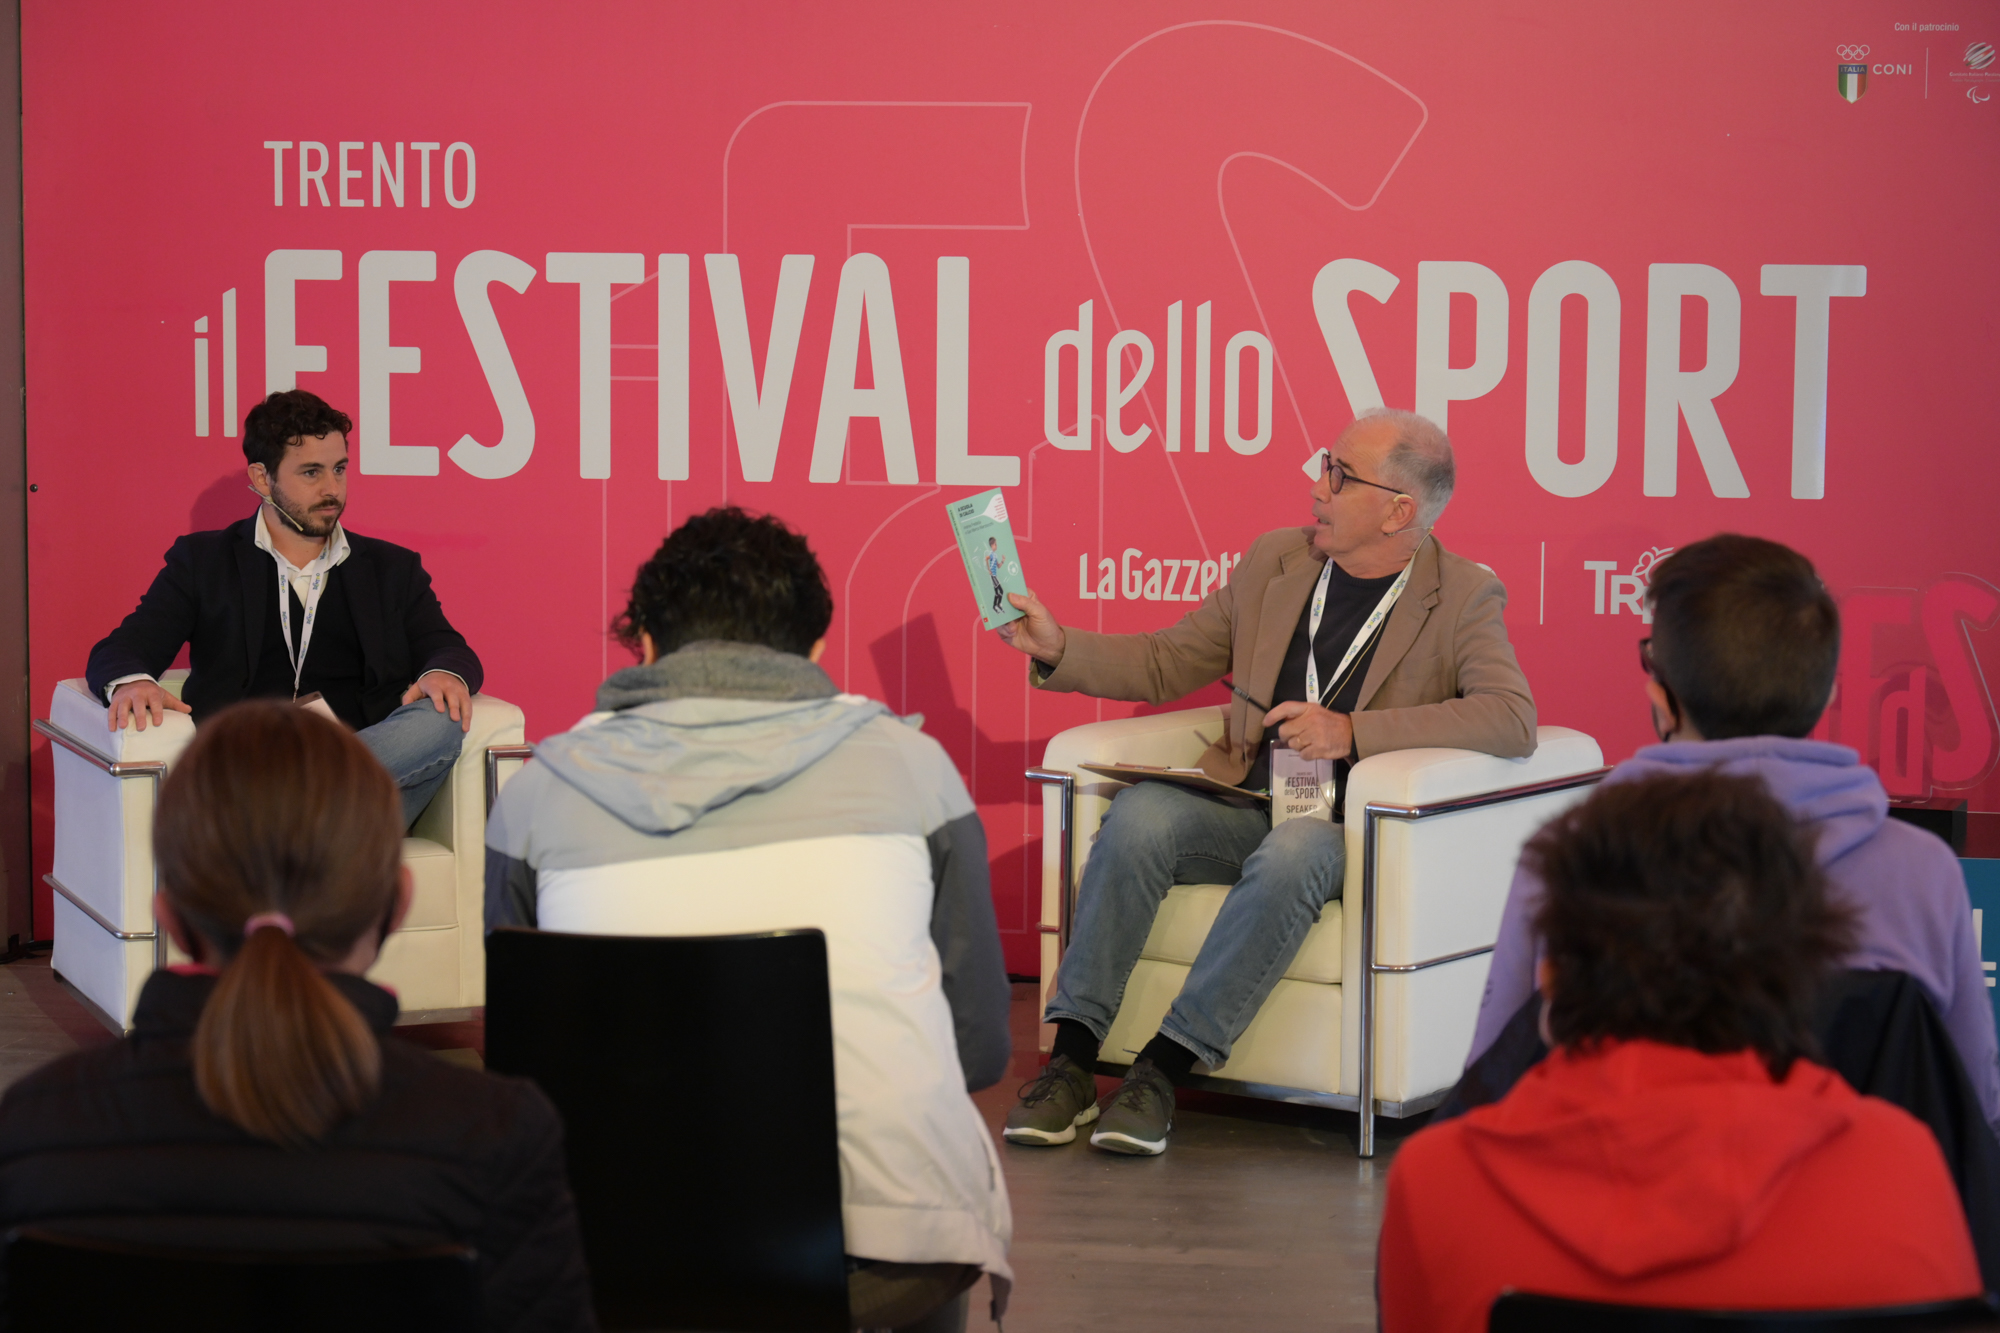 Andrea Fredella intervistato da Carlo Martinelli al Festival dello Sport